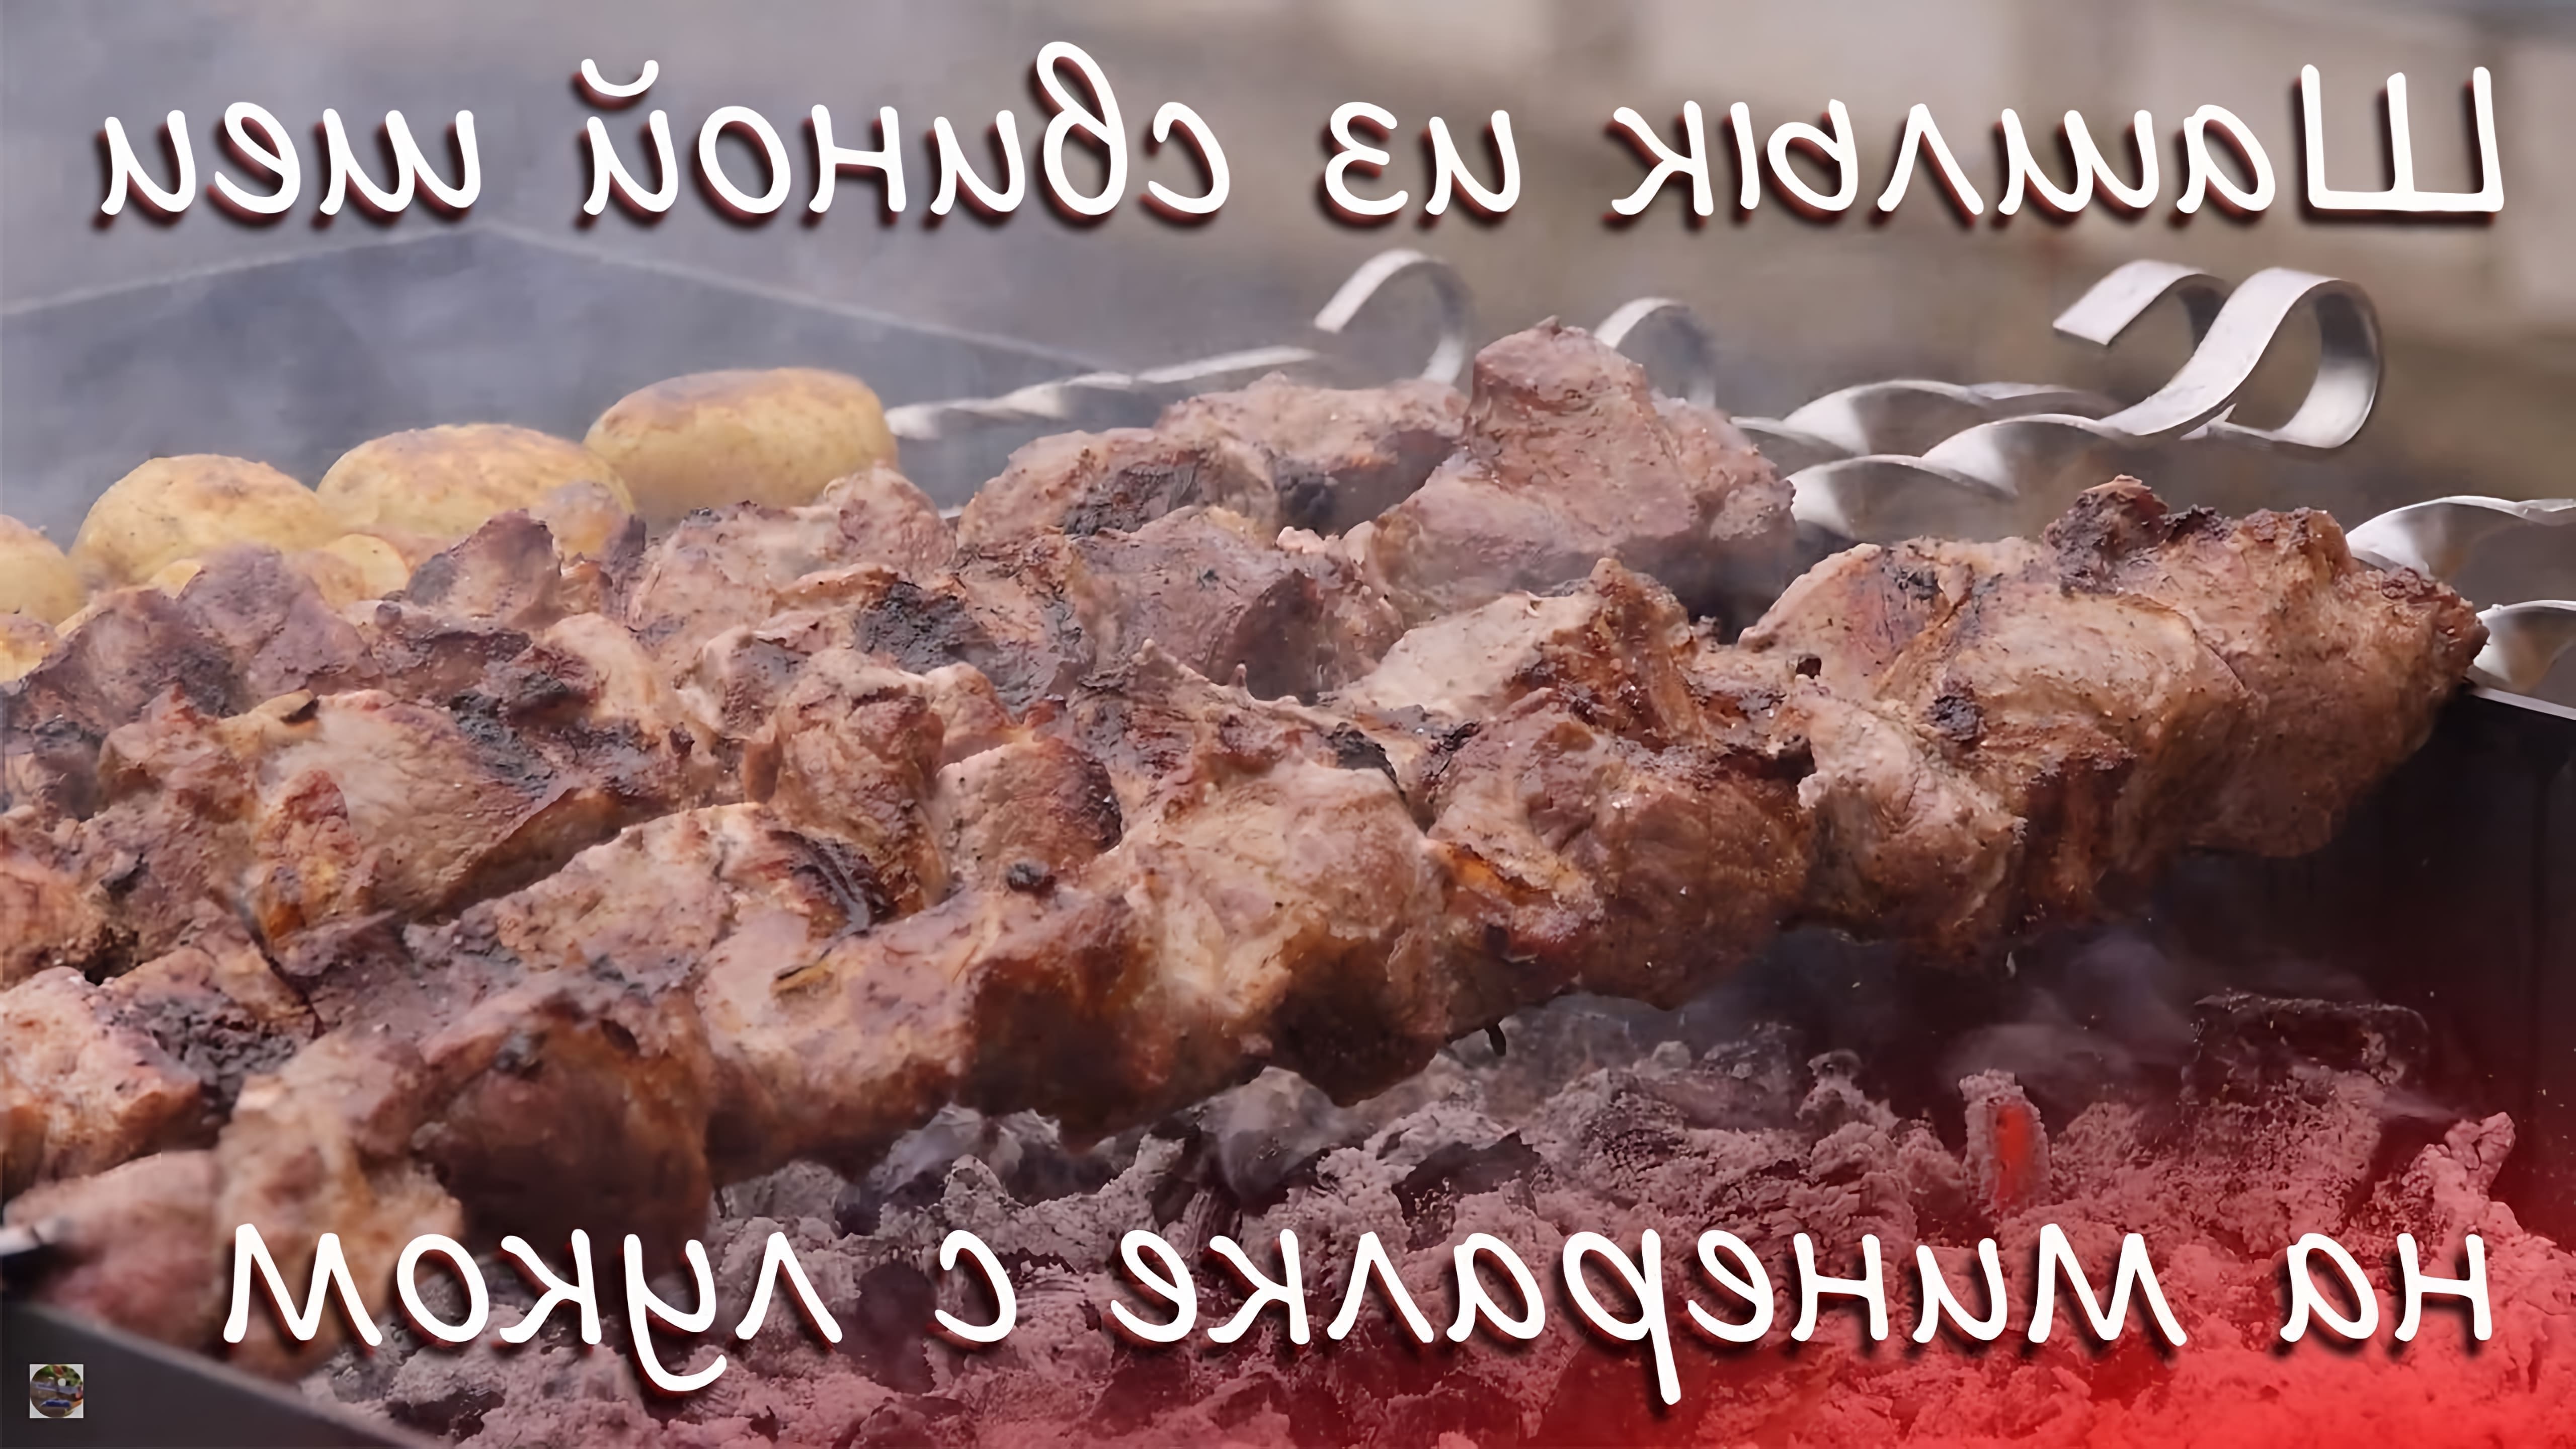 В этом видео-ролике будет показан рецепт приготовления шашлыка из свиной шеи на минеральной воде с добавлением лука